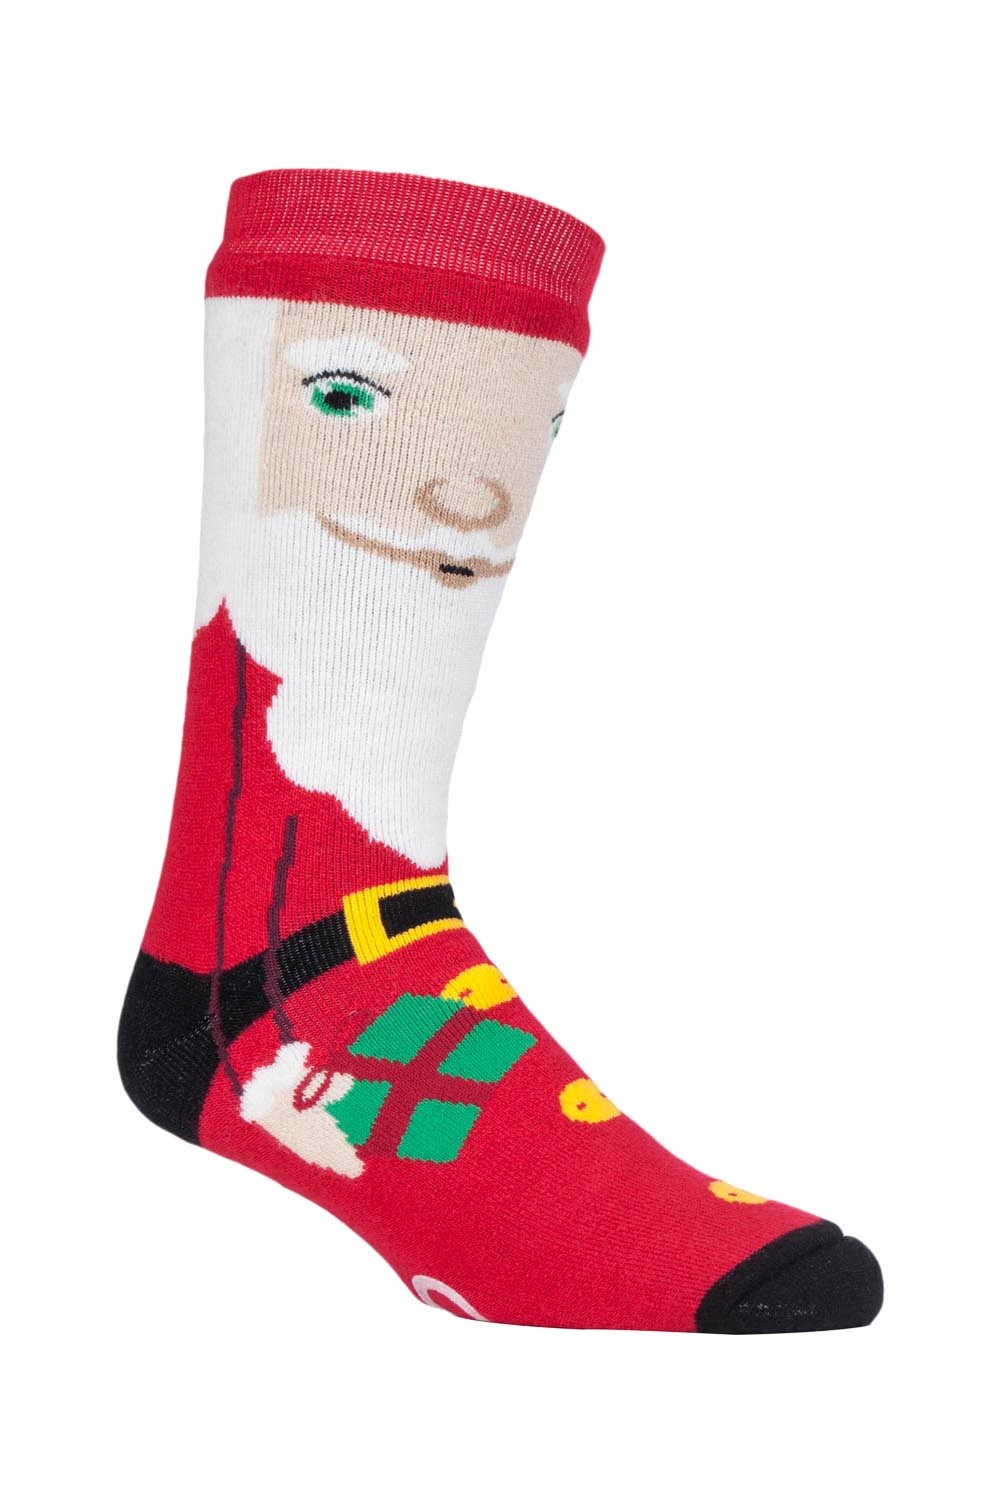 Mens Christmas Non Slip Thermal Slipper Socks